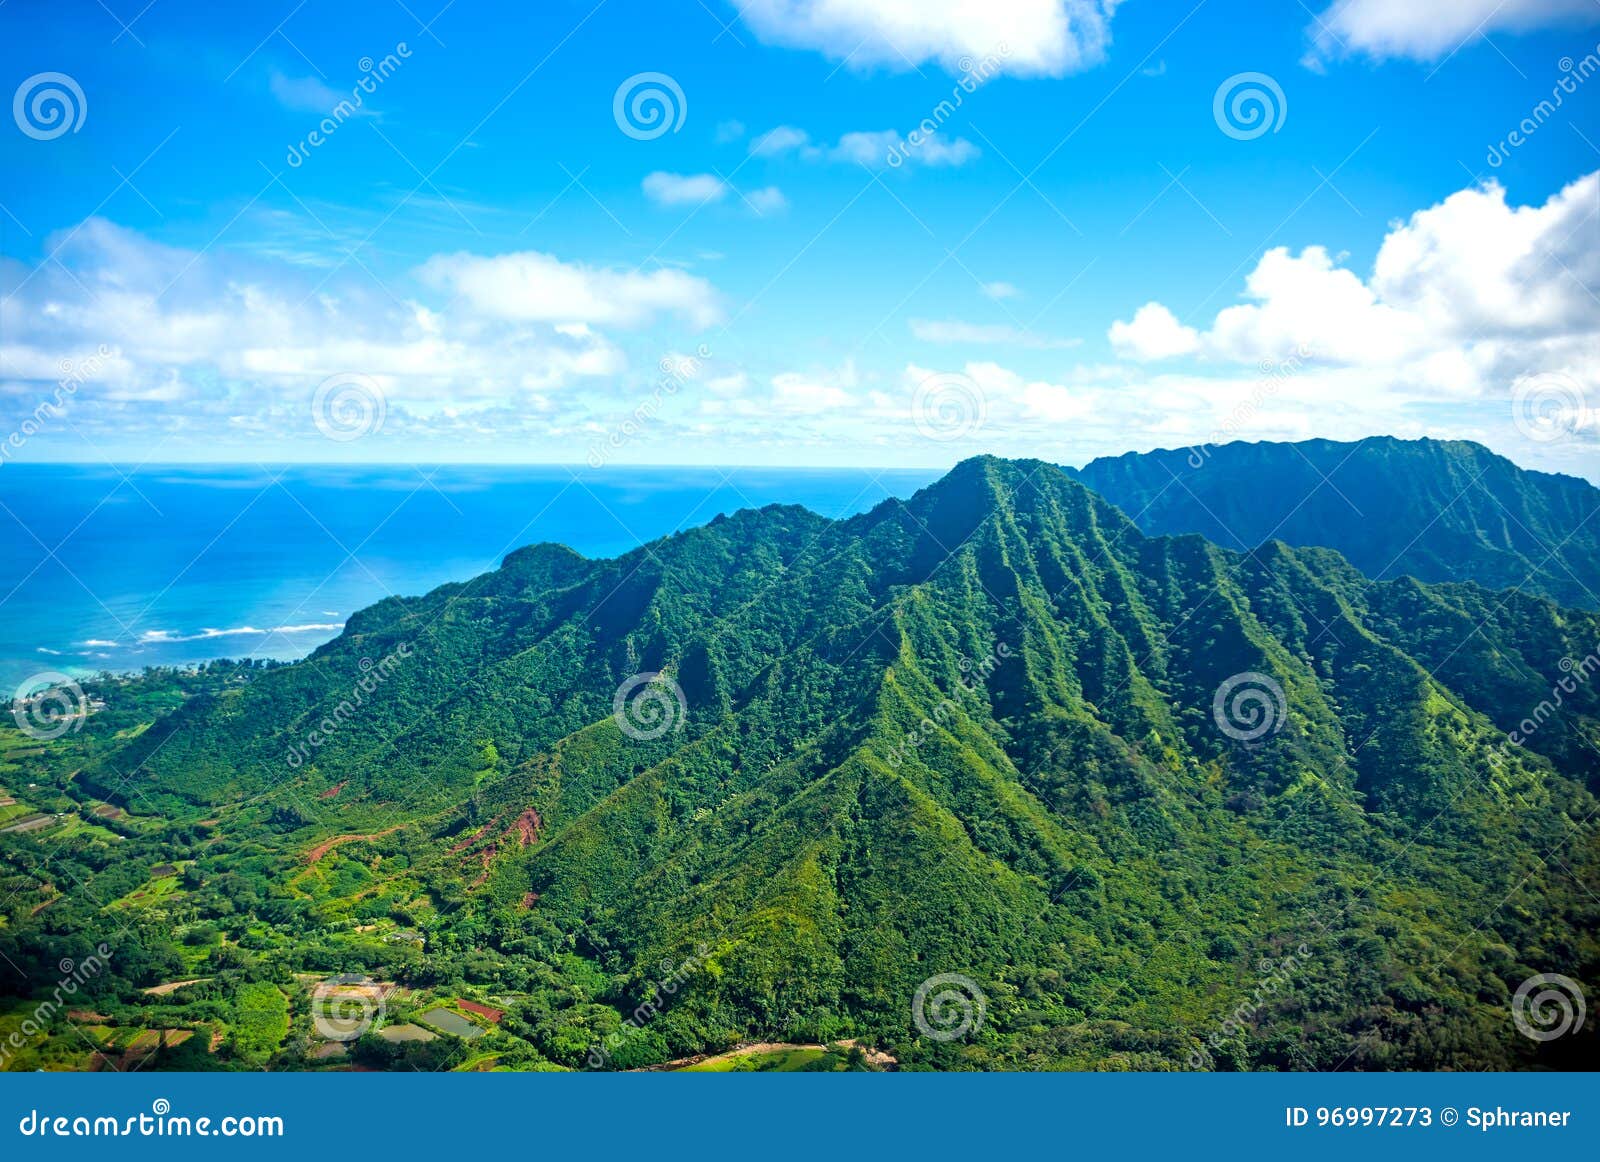 oahu island, hawaii